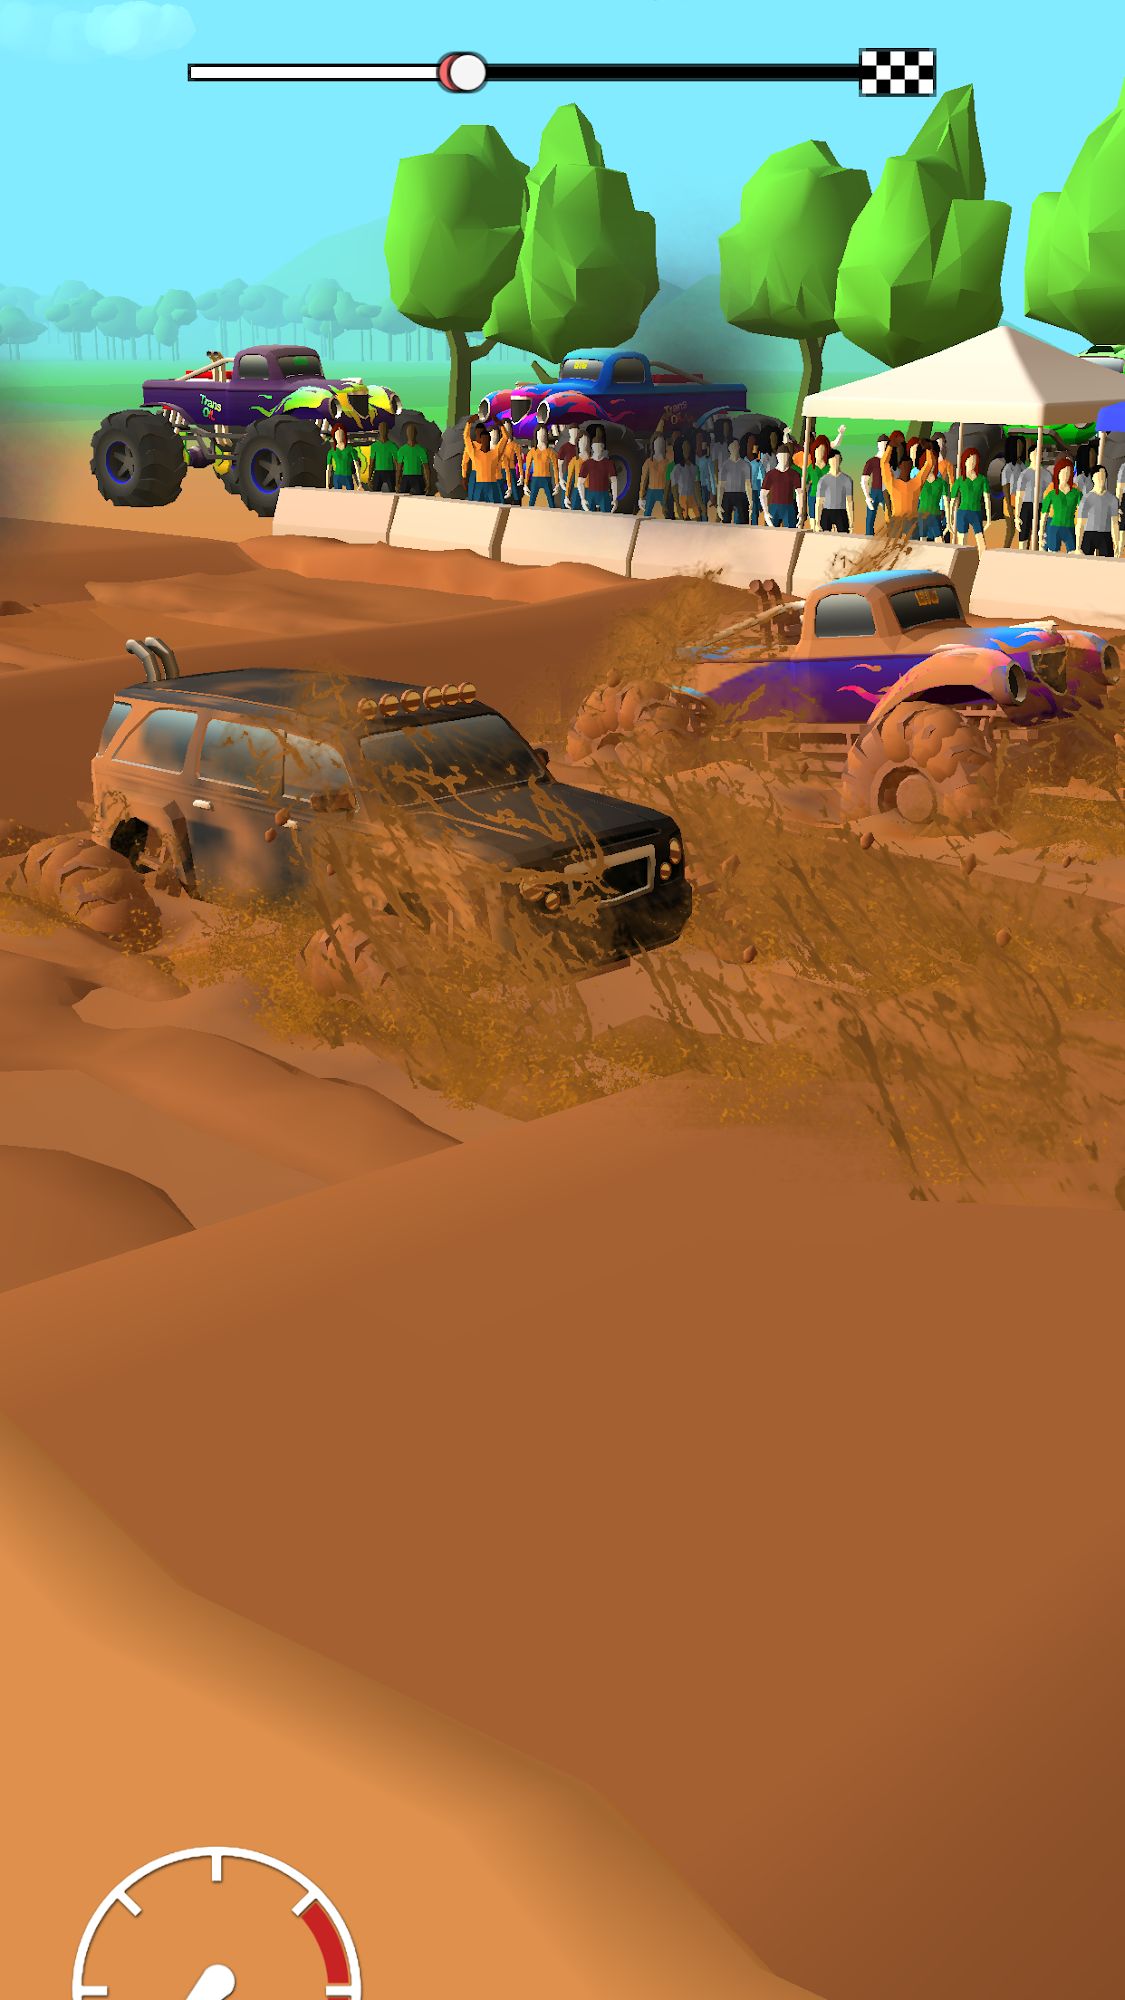 Mud Racing: 4х4 Monster Truck Off-Road simulator - Android game screenshots.